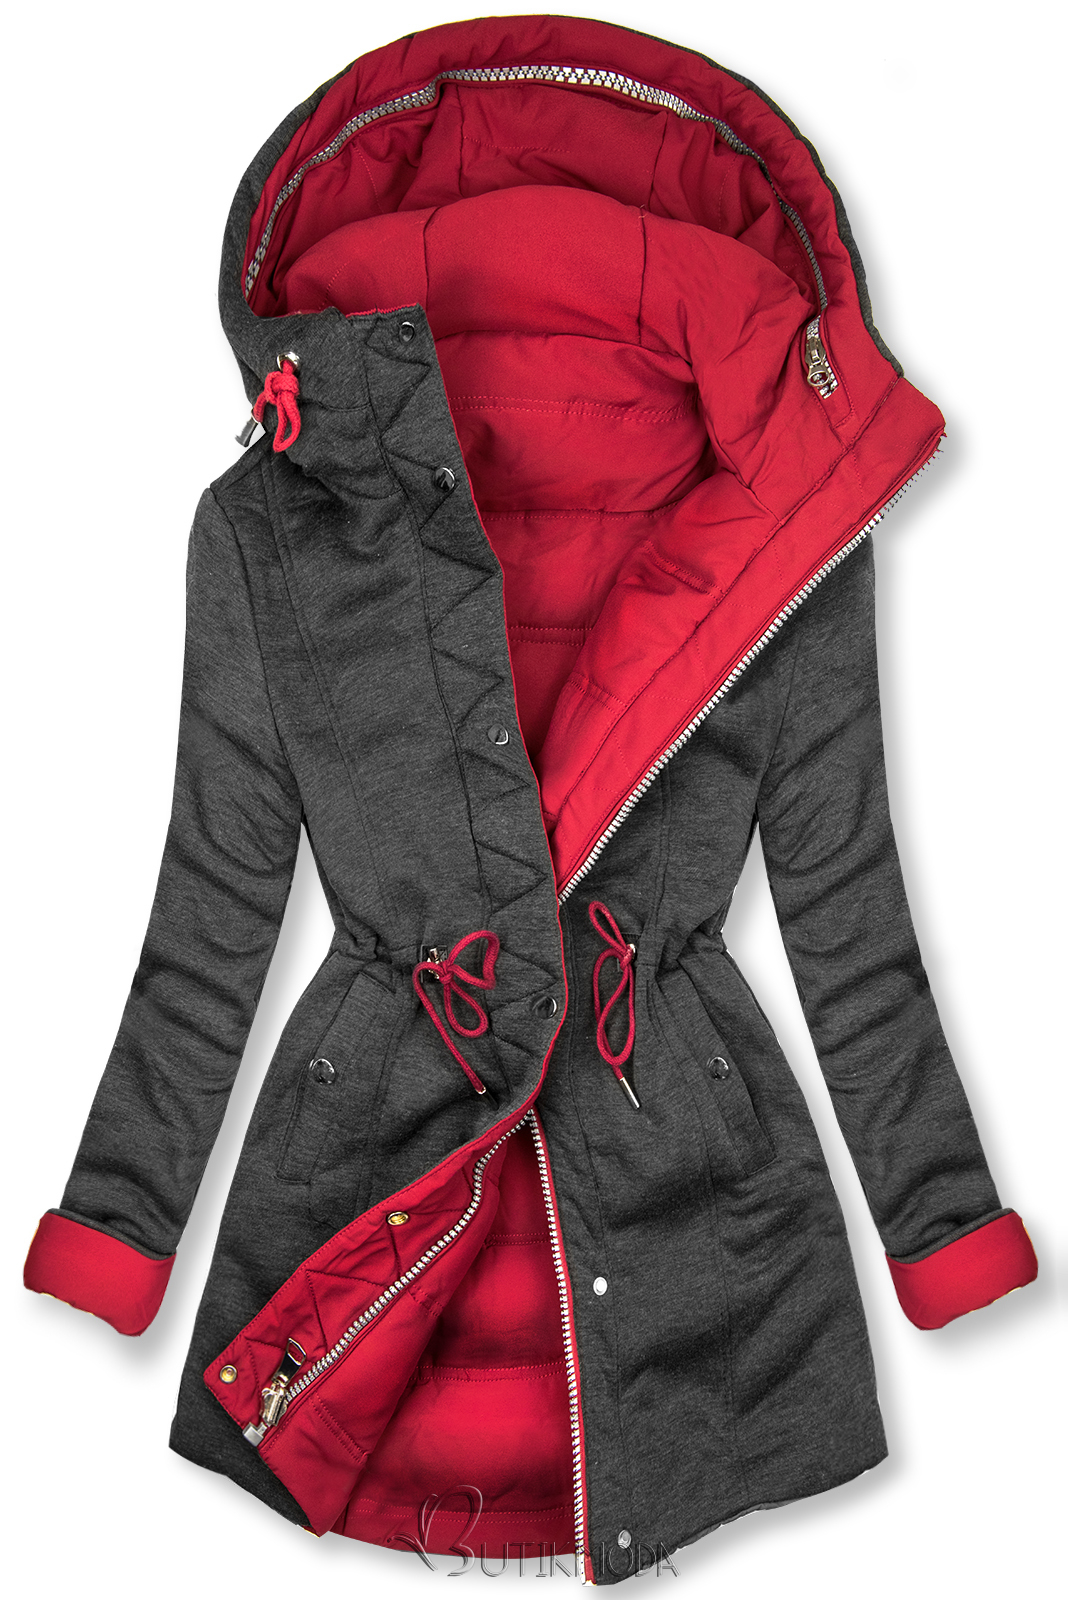 Borvörös és szürke színű kifordítható kabát sportos stílusban